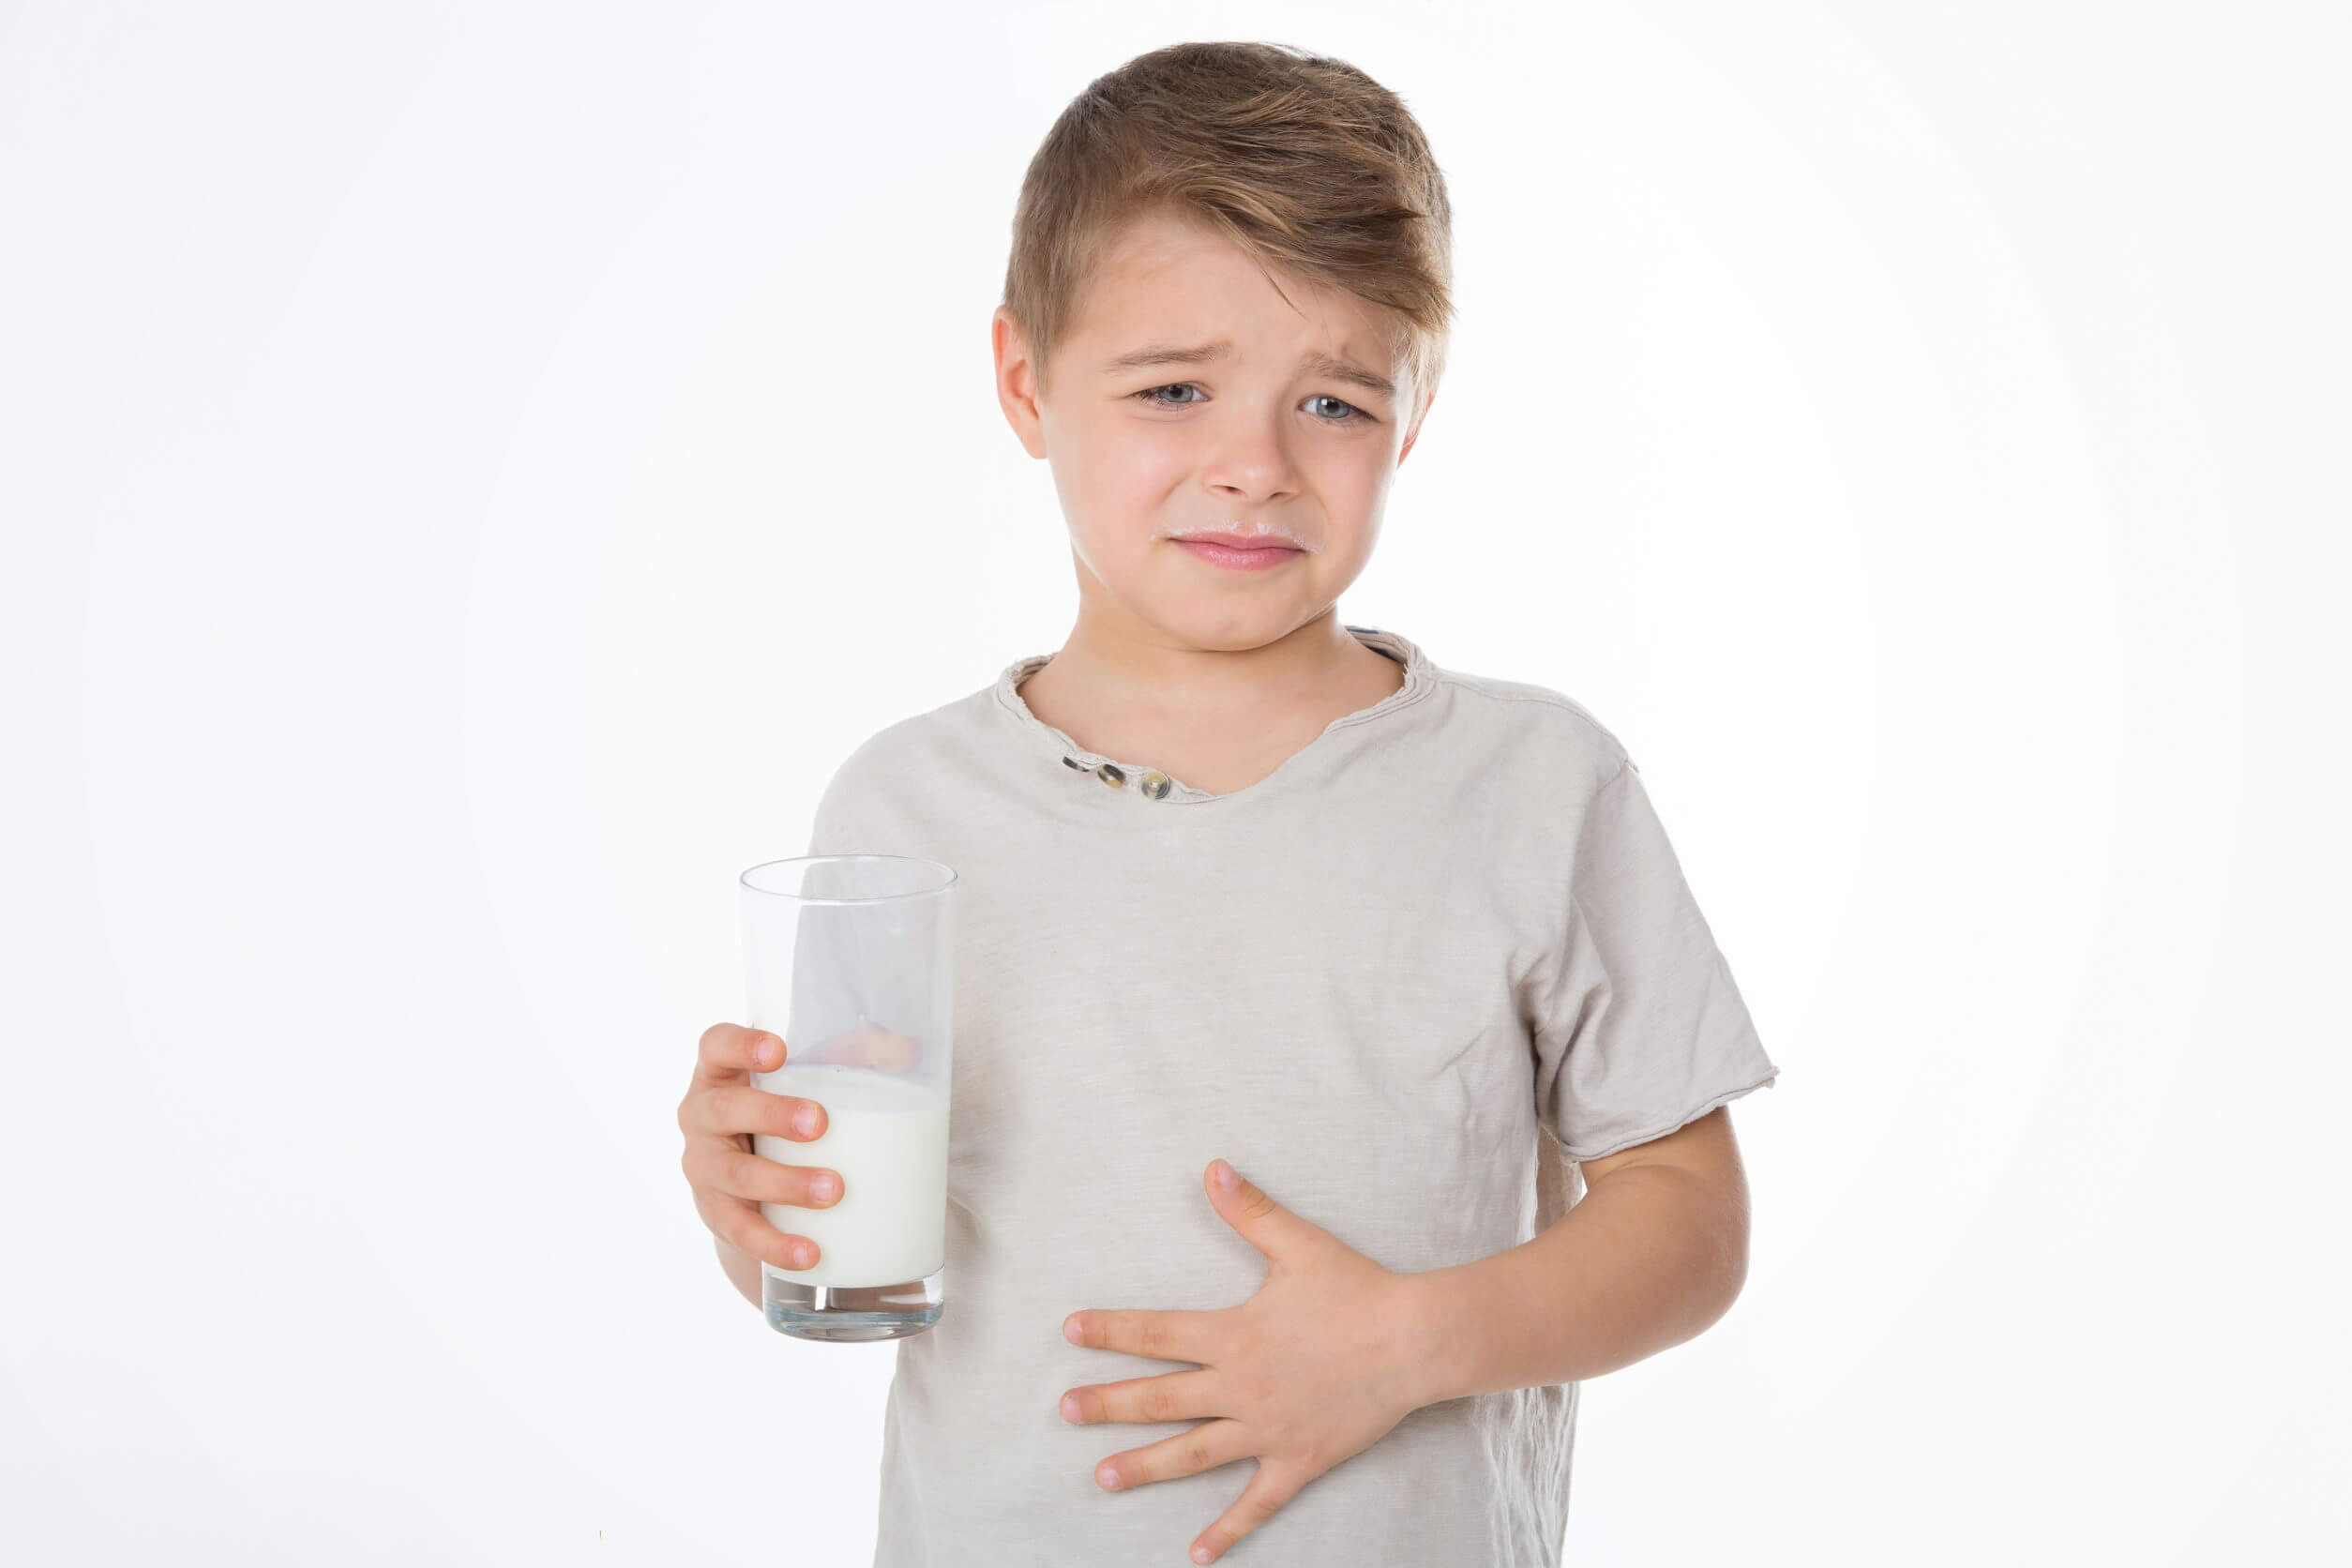 La diarrea osmotica è tipica nei pazienti con intolleranza al lattosio